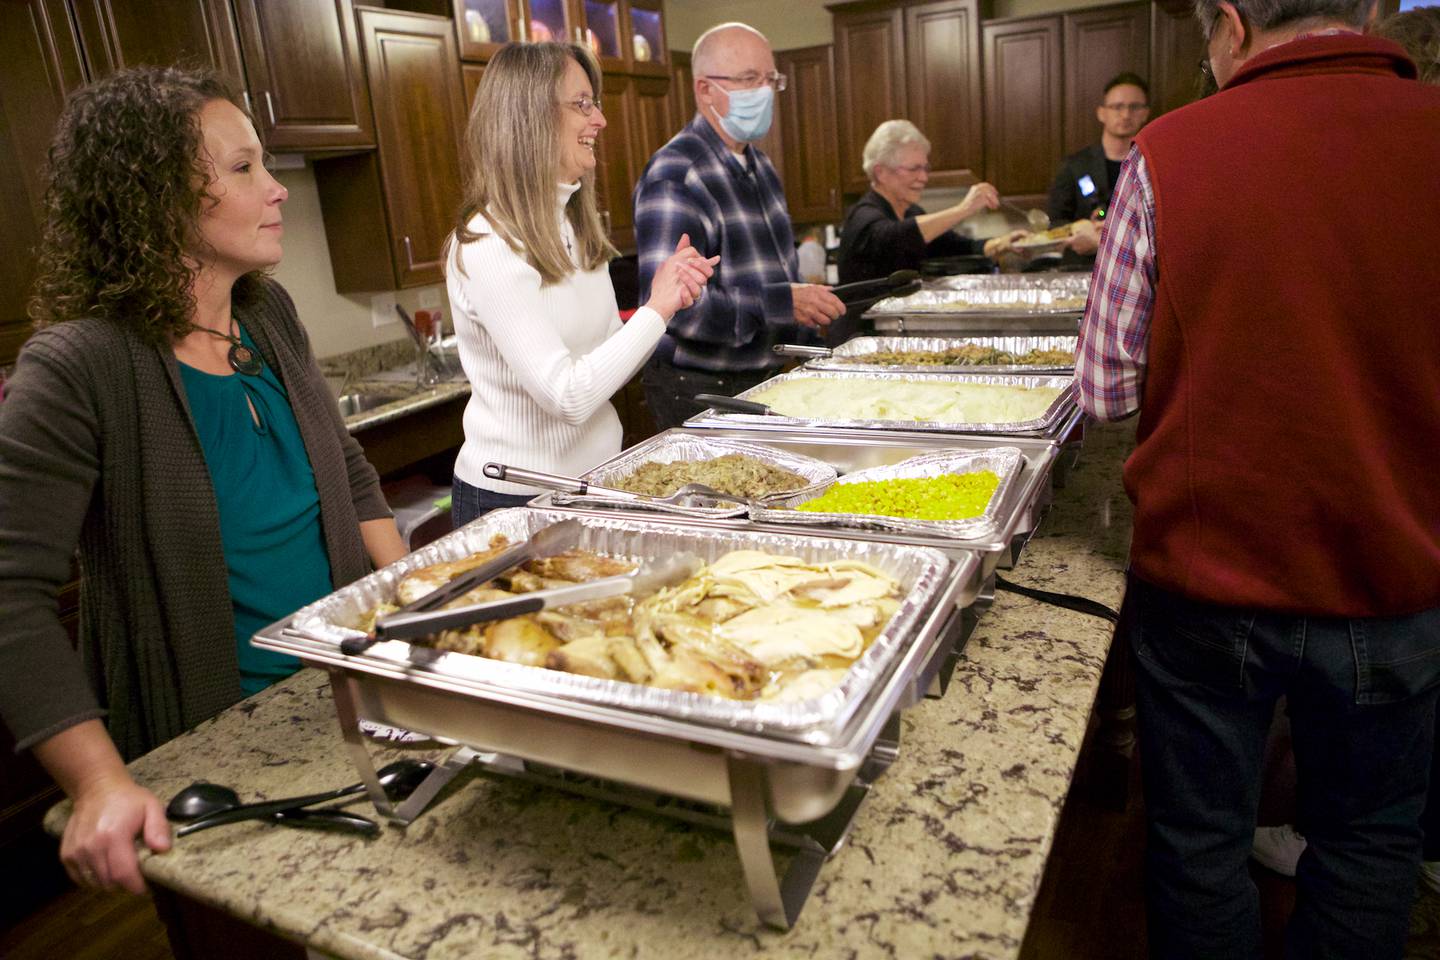 Εθελοντές εξυπηρετούν τους κατοίκους κατά τη διάρκεια ενός δείπνου για την Ημέρα των Ευχαριστιών στο Gable Point Senior Housing το Σάββατο 19 Νοεμβρίου 2022 στη Λίμνη Crystal.